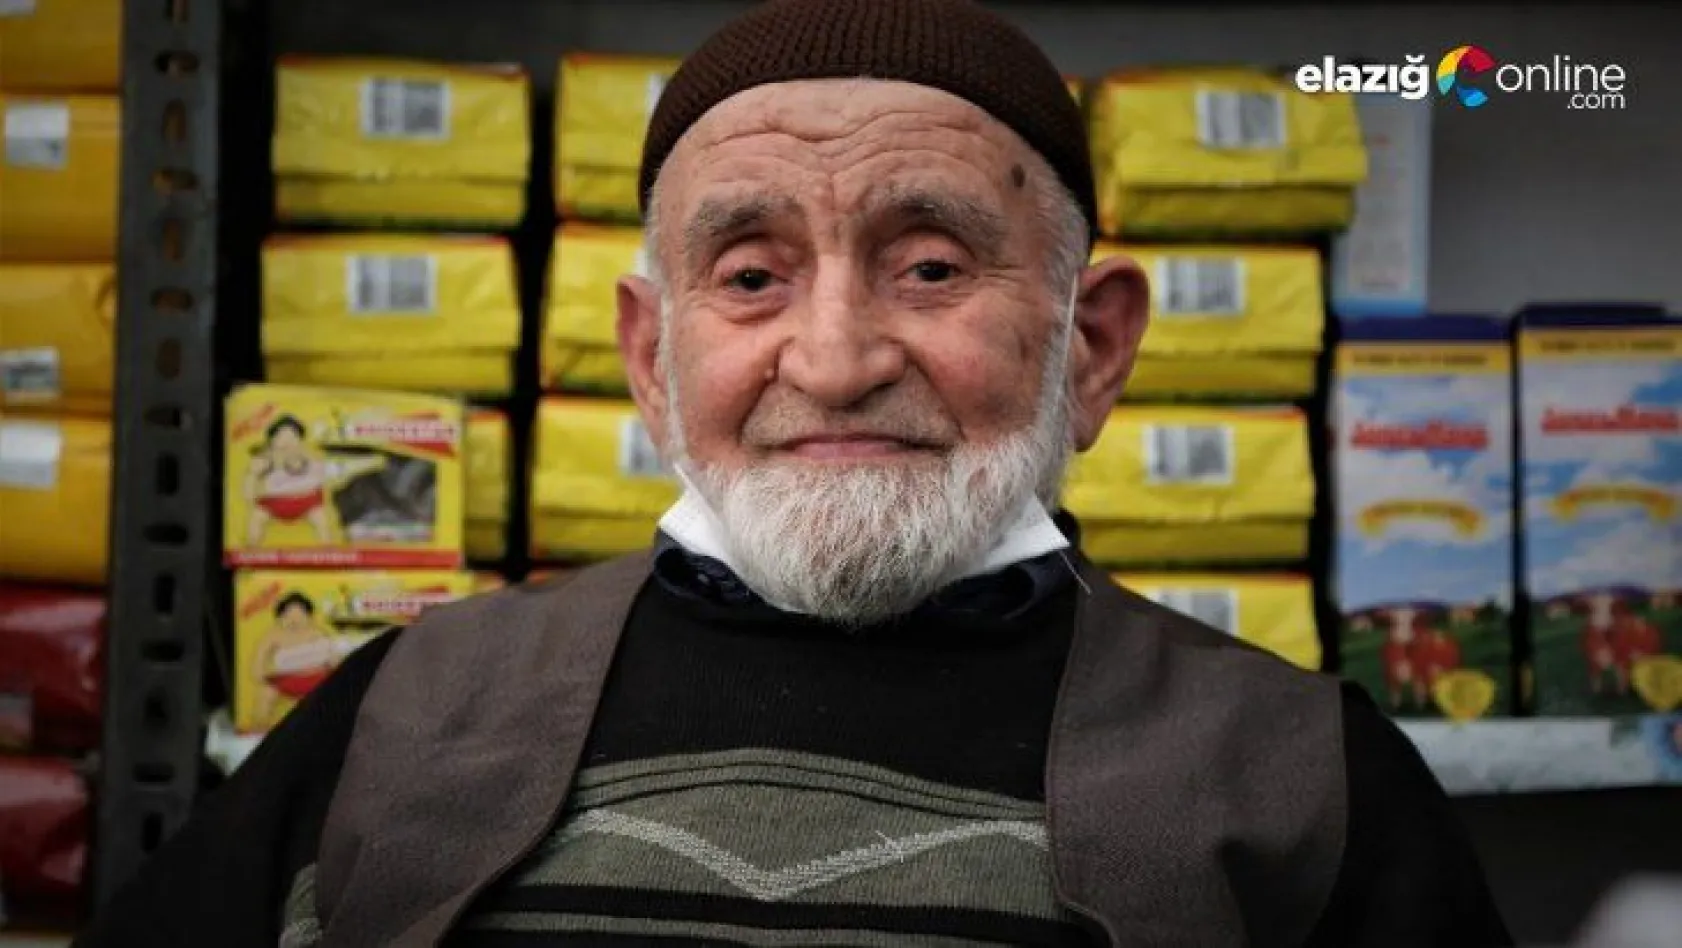 Elazığ'ın en yaşlı esnafı 85 yaşında işinin başına döndü